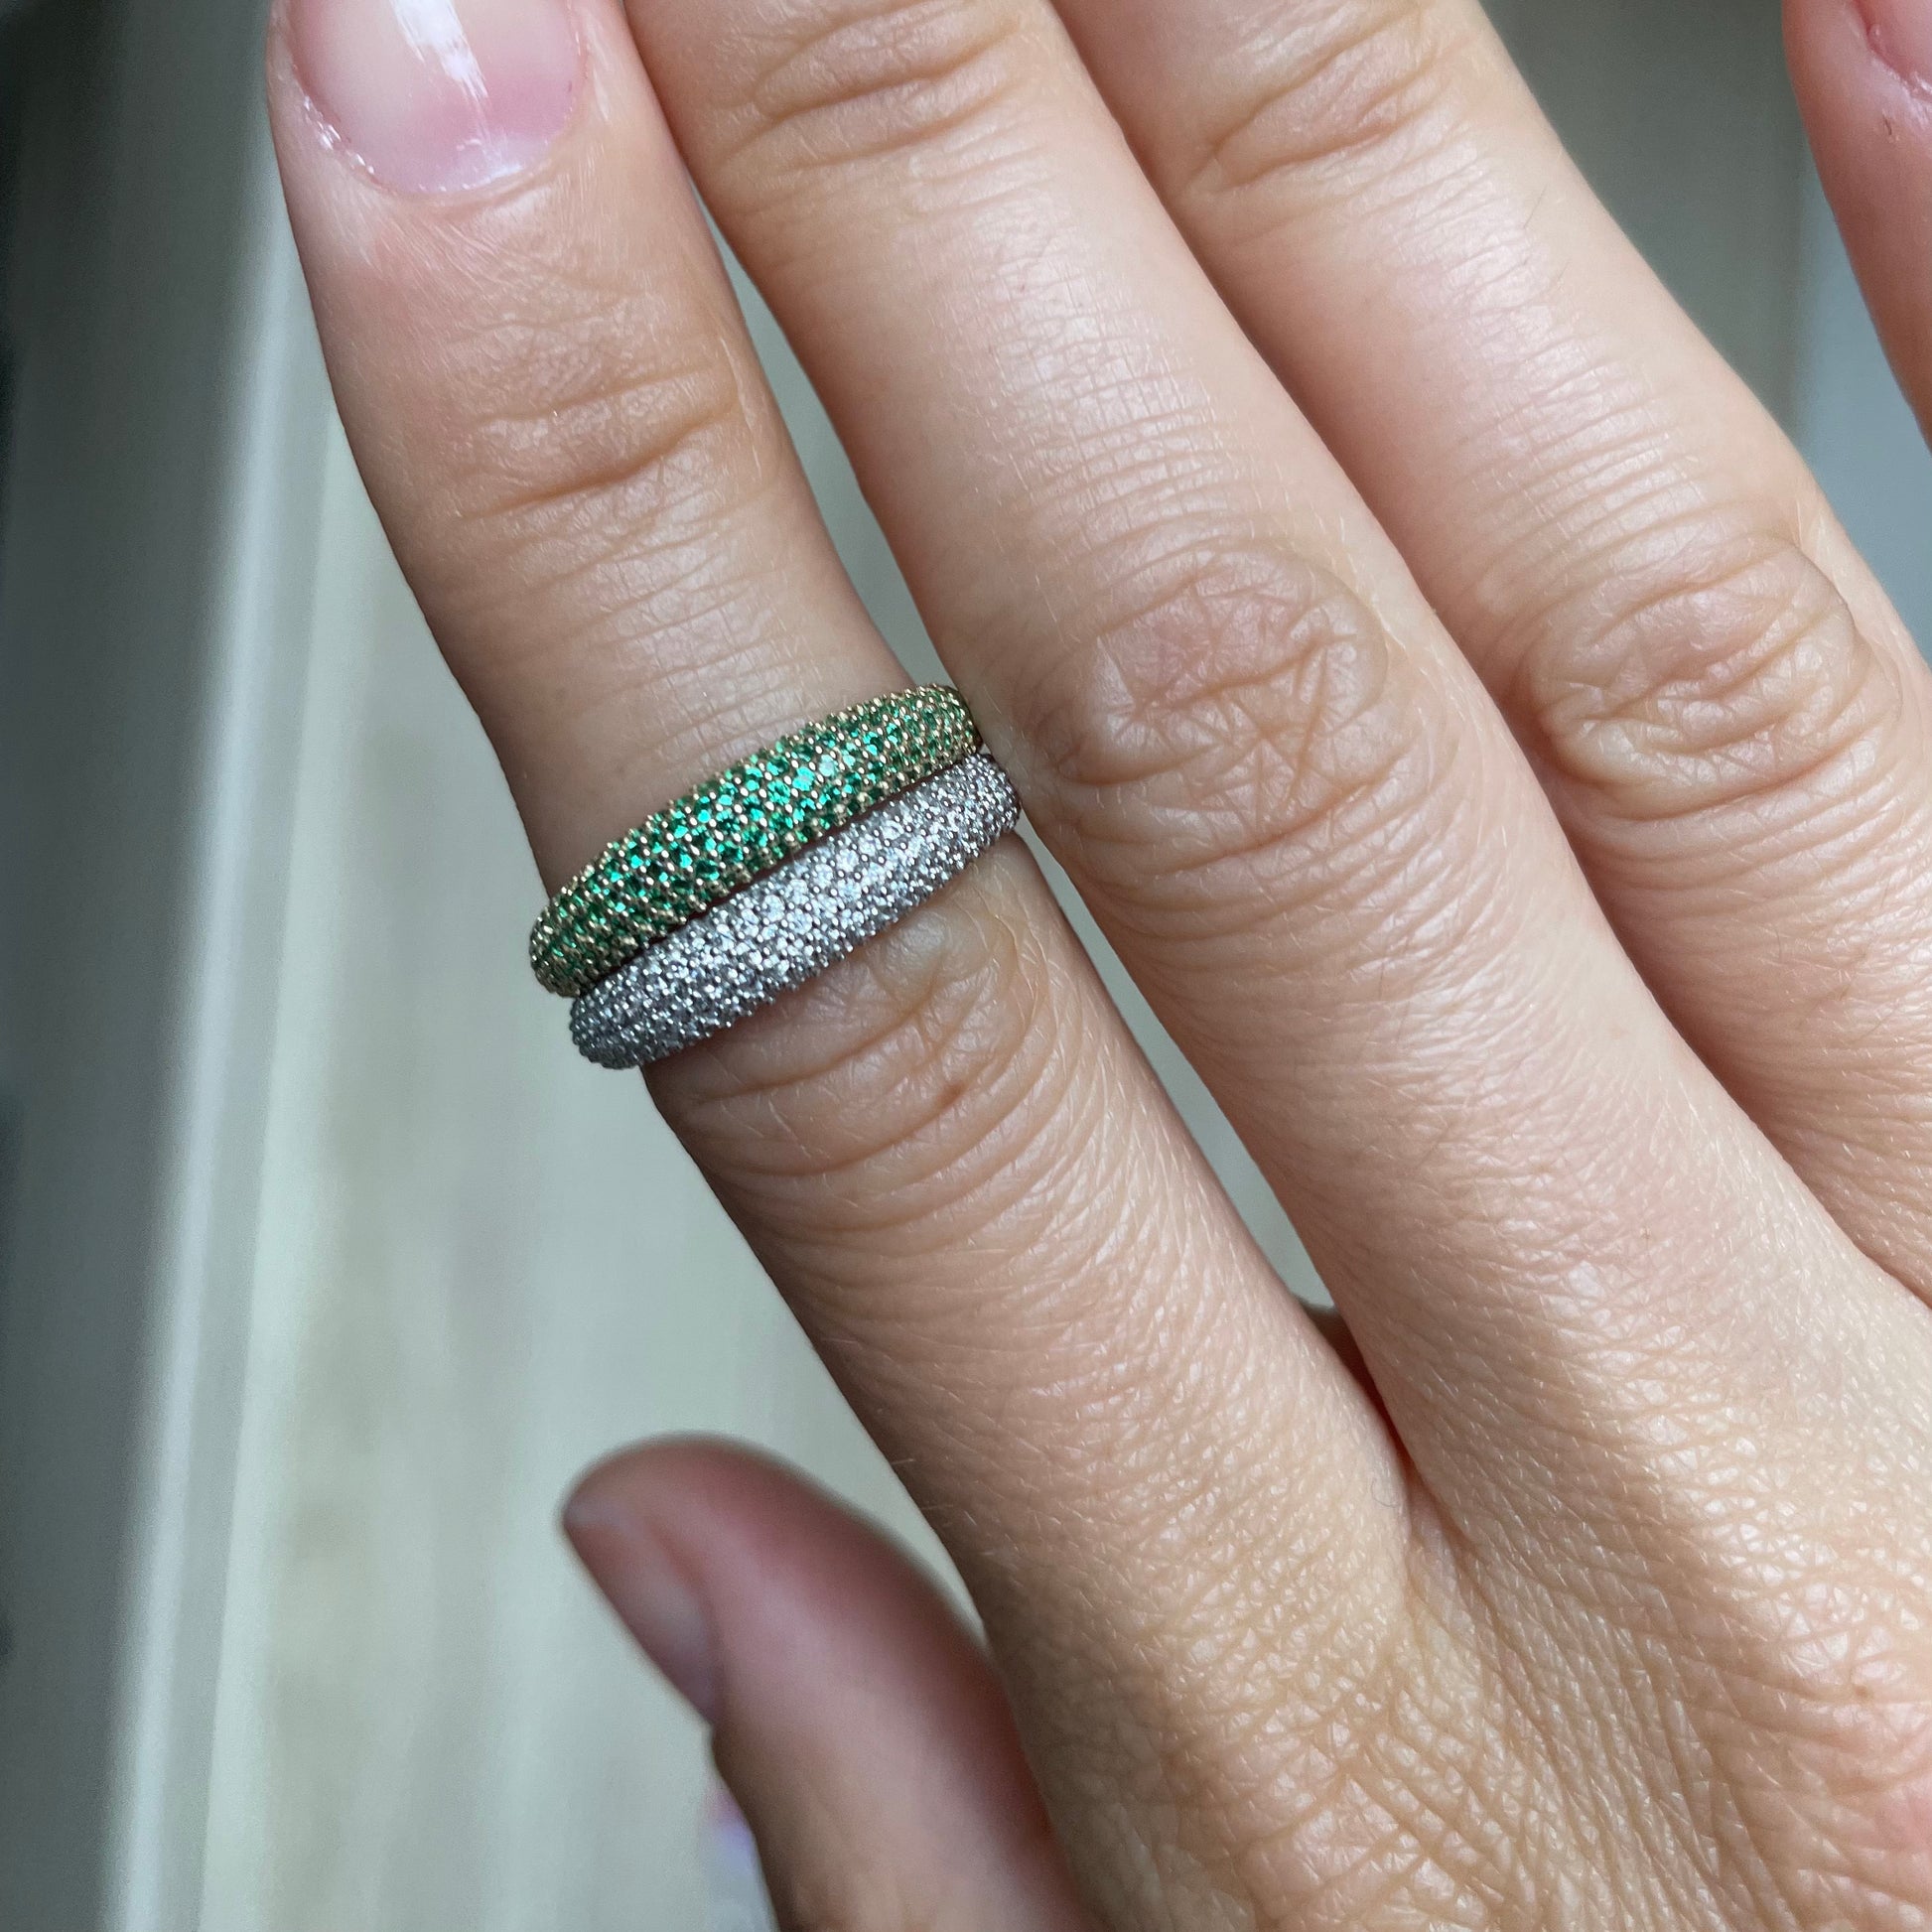 "Nilly" Dôme Pavé Diamond Ring - - Jewelry - Goldie Paris Jewelry - Pavé Ring stackable statement